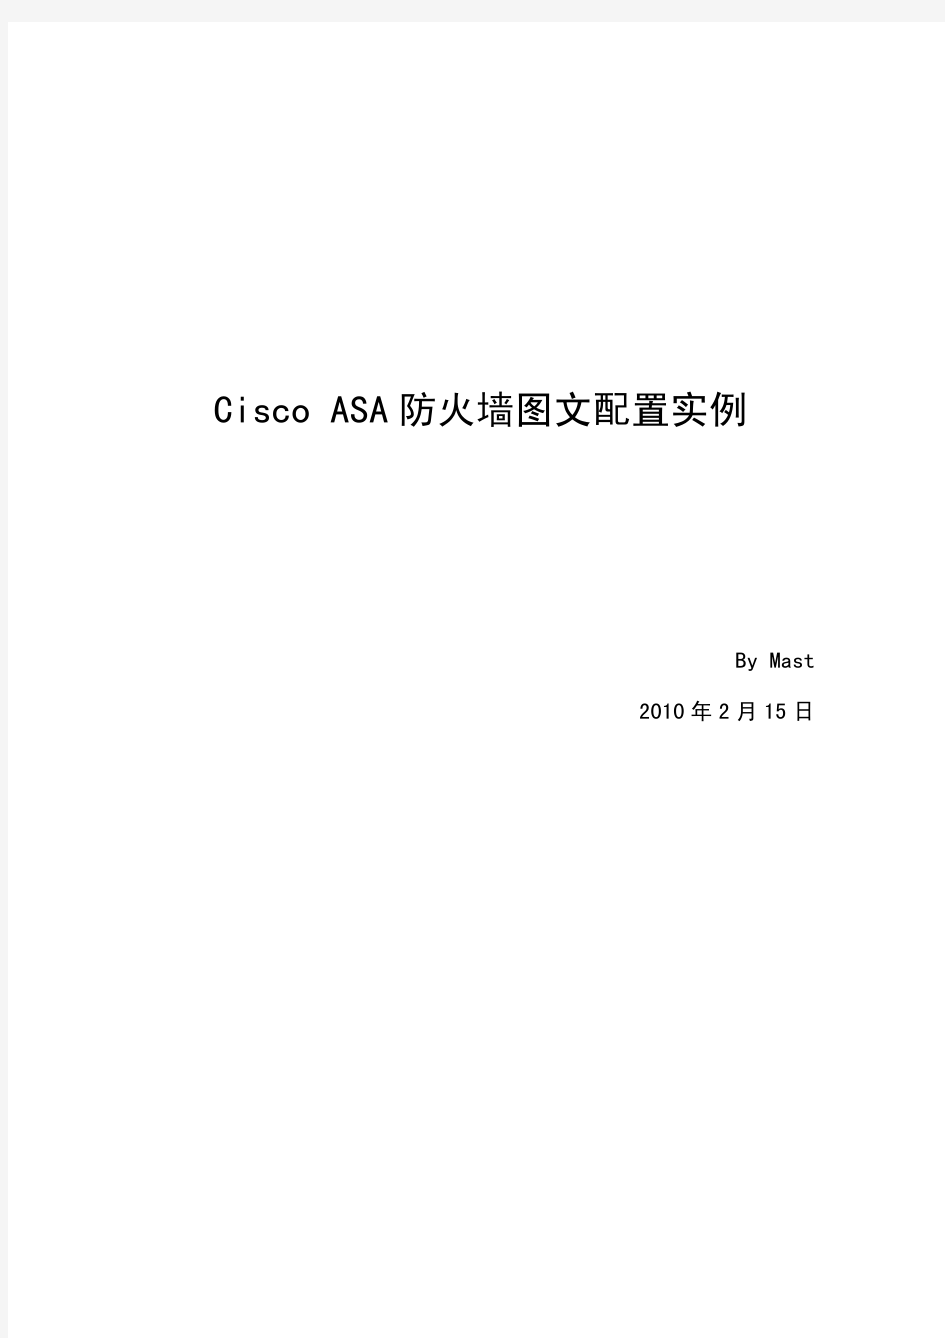 Cisco_ASA防火墙ASDM图文配置实例